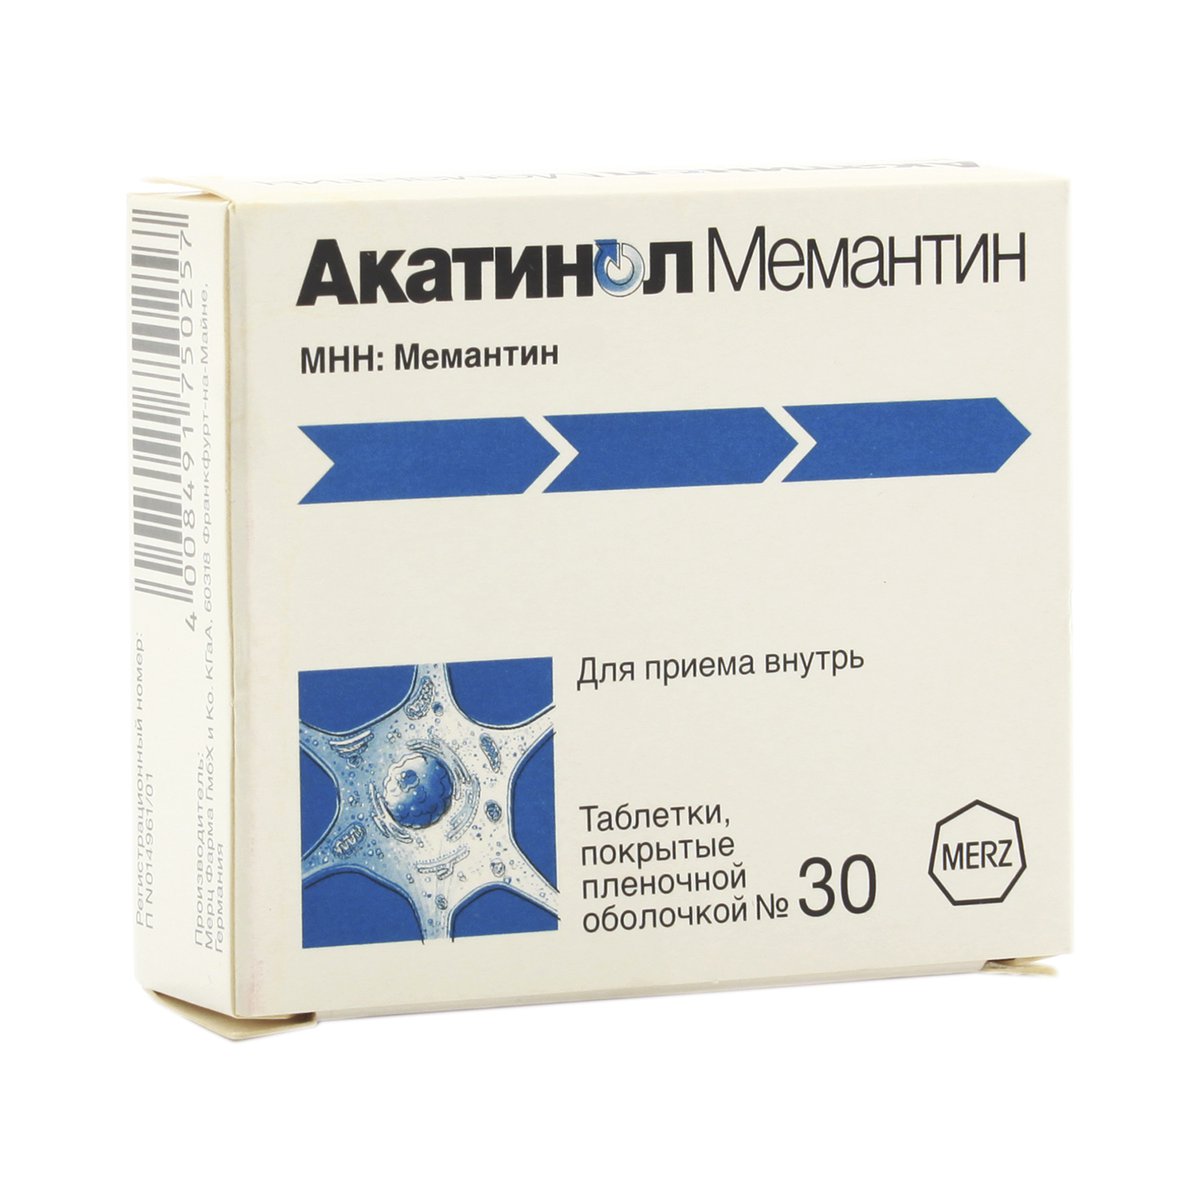 Акатинол мемантин (таблетки, 30 шт, 10 мг) - цена,  онлайн в .